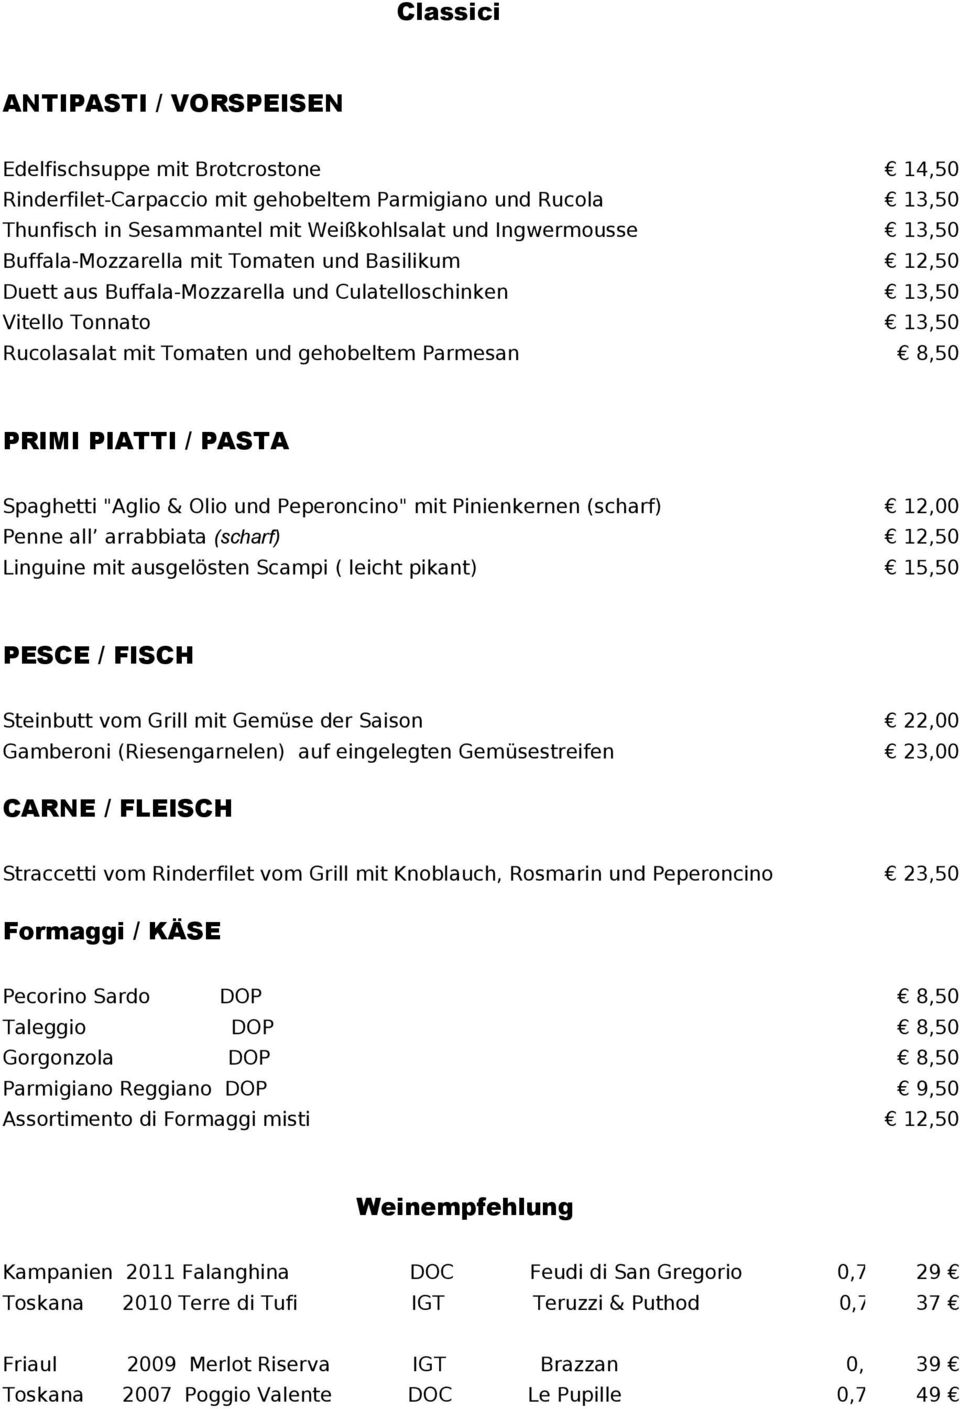 PIATTI / PASTA Spaghetti "Aglio & Olio und Peperoncino" mit Pinienkernen (scharf) 12,00 Penne all arrabbiata (scharf) 12,50 Linguine mit ausgelösten Scampi ( leicht pikant) 15,50 PESCE / FISCH